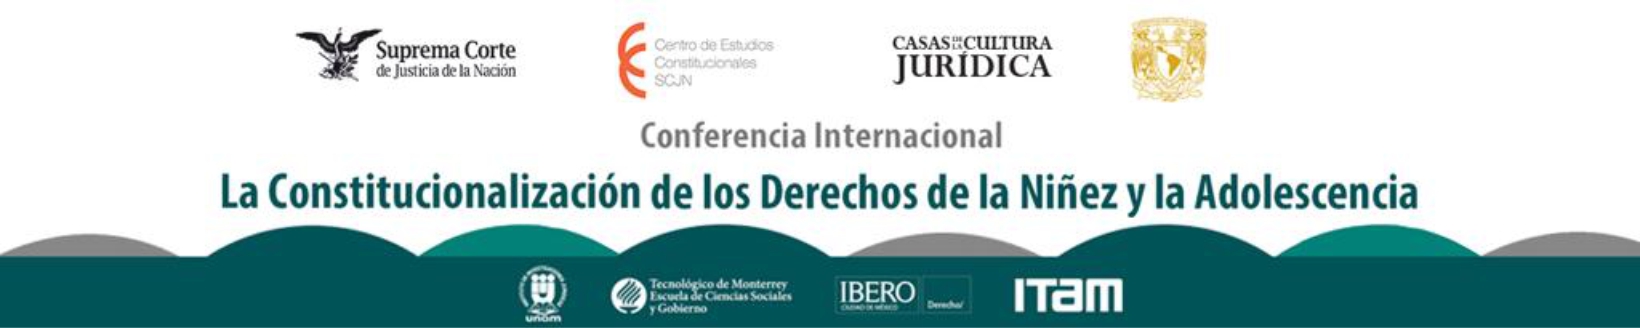 Banner de la Conferencia Internacional La Constitucionalización de los Derechos de la Niñez y la Adolescencia